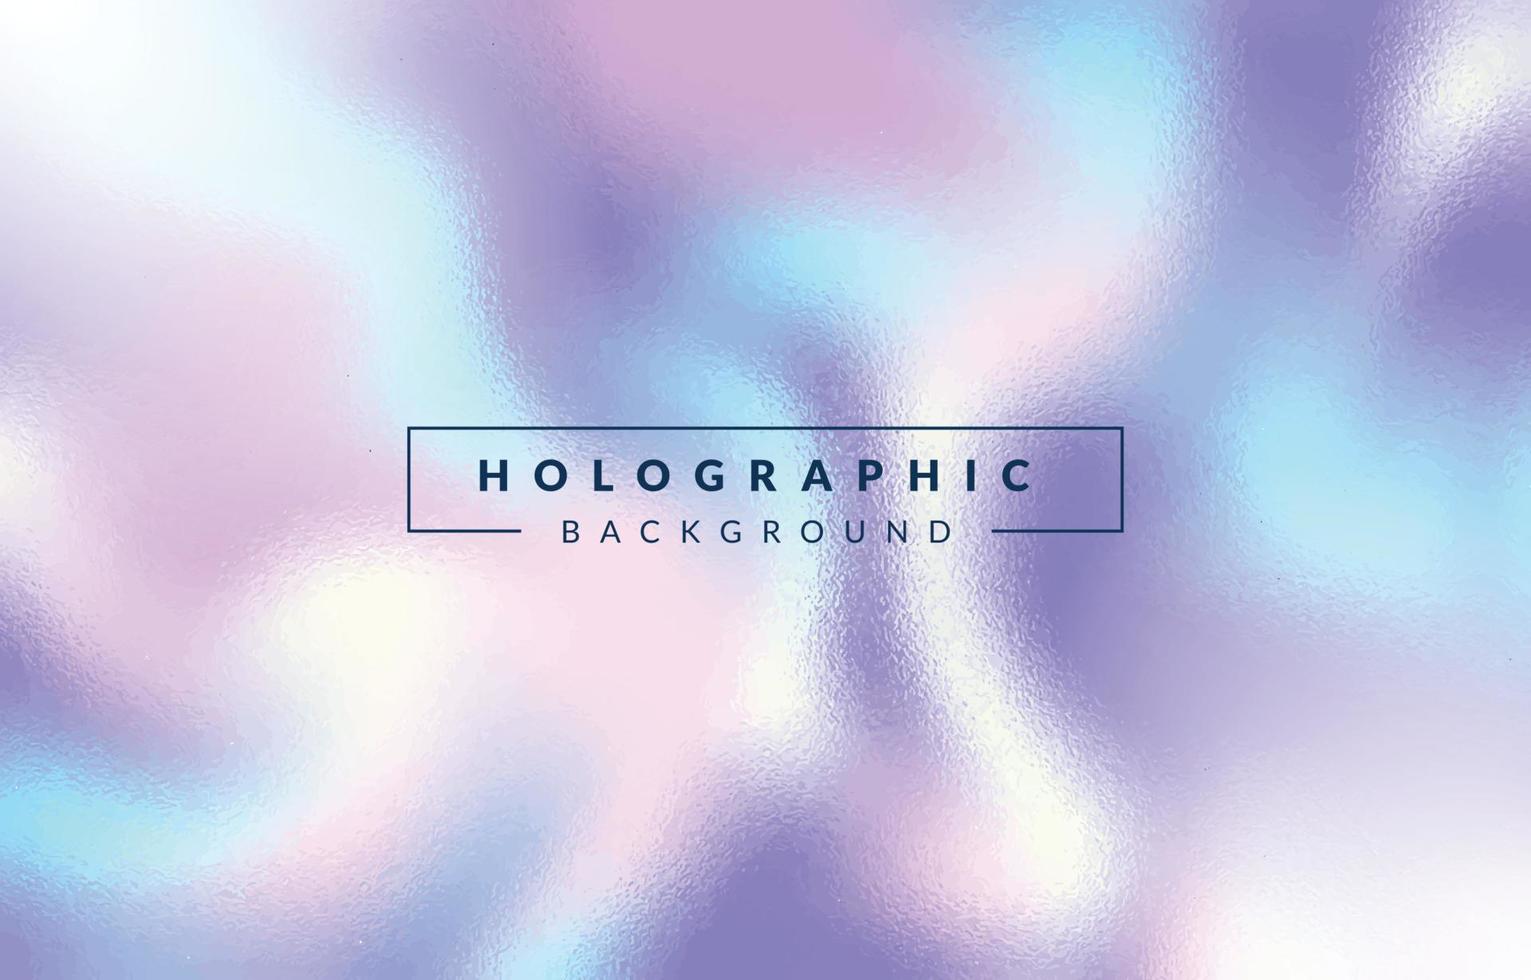 holografischer abstrakter Hintergrund vektor